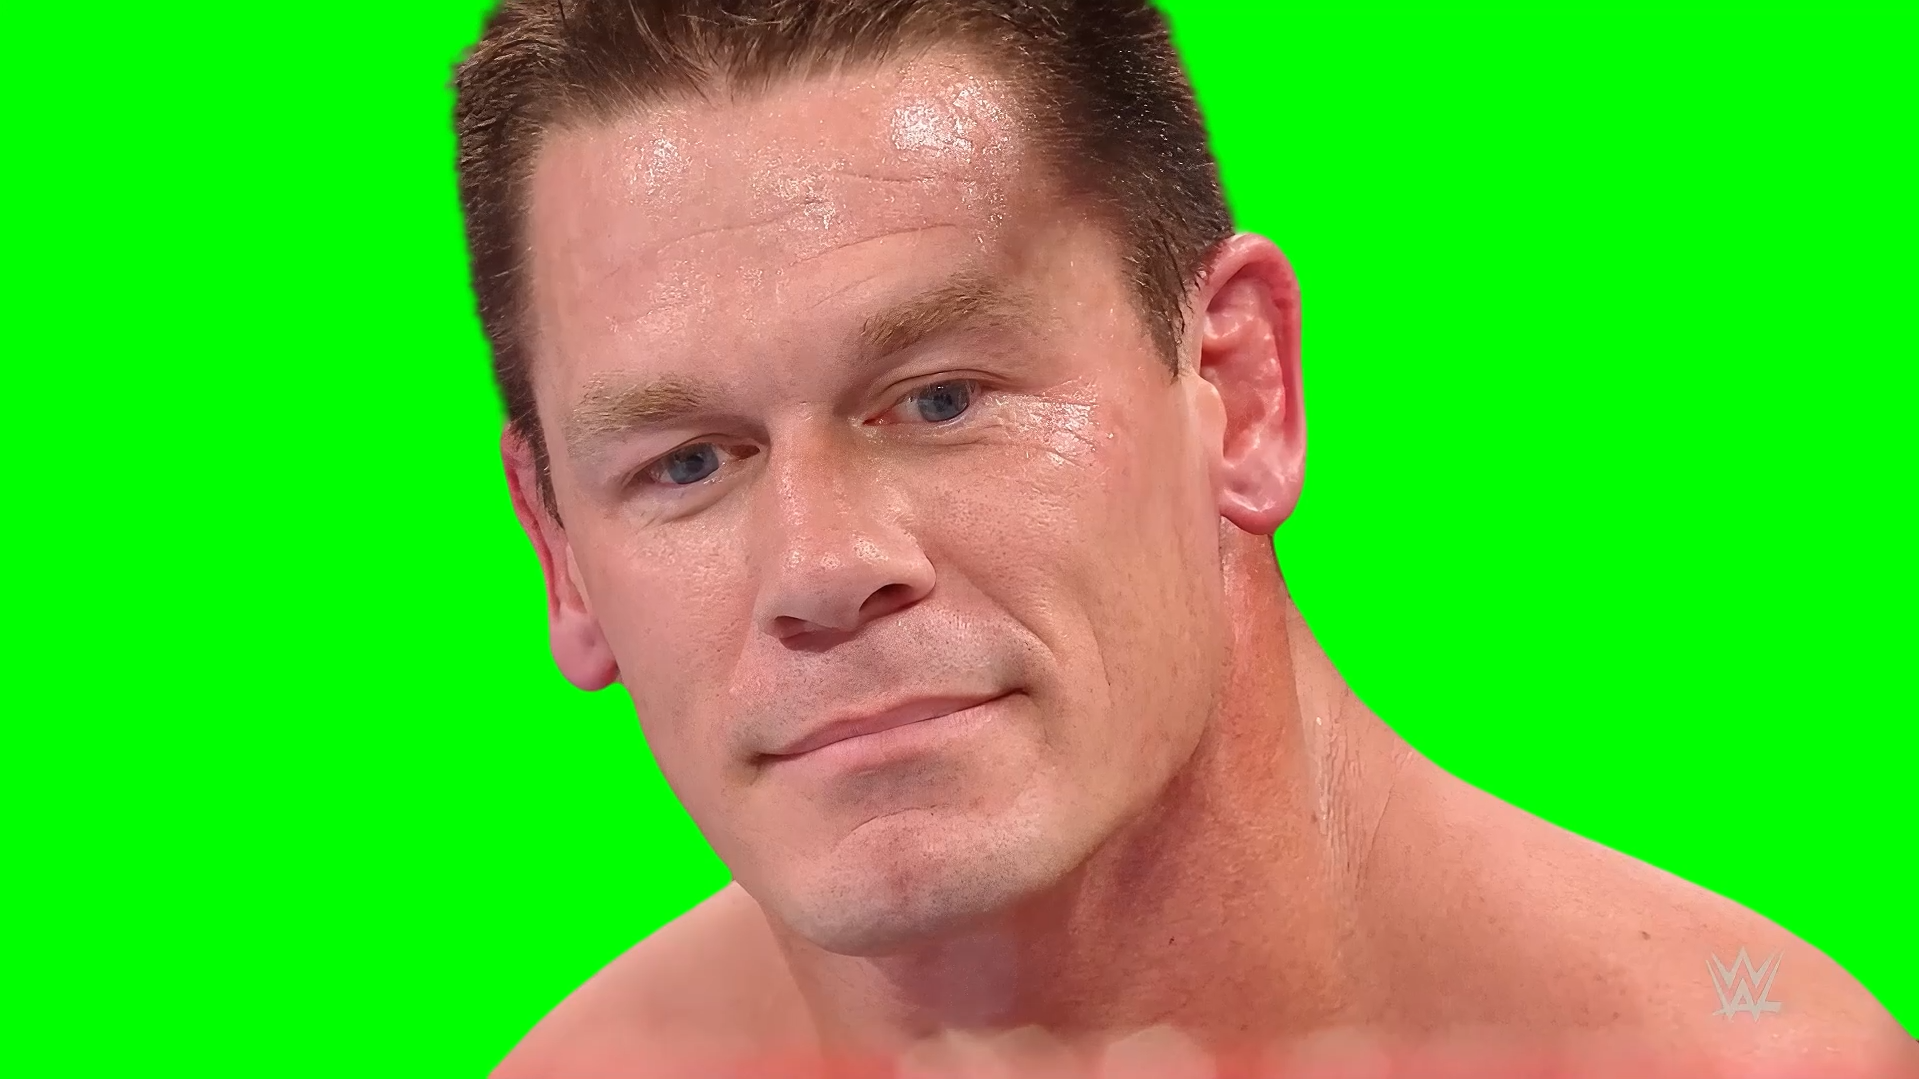 Sad John Cena meme WWE (Green Screen)